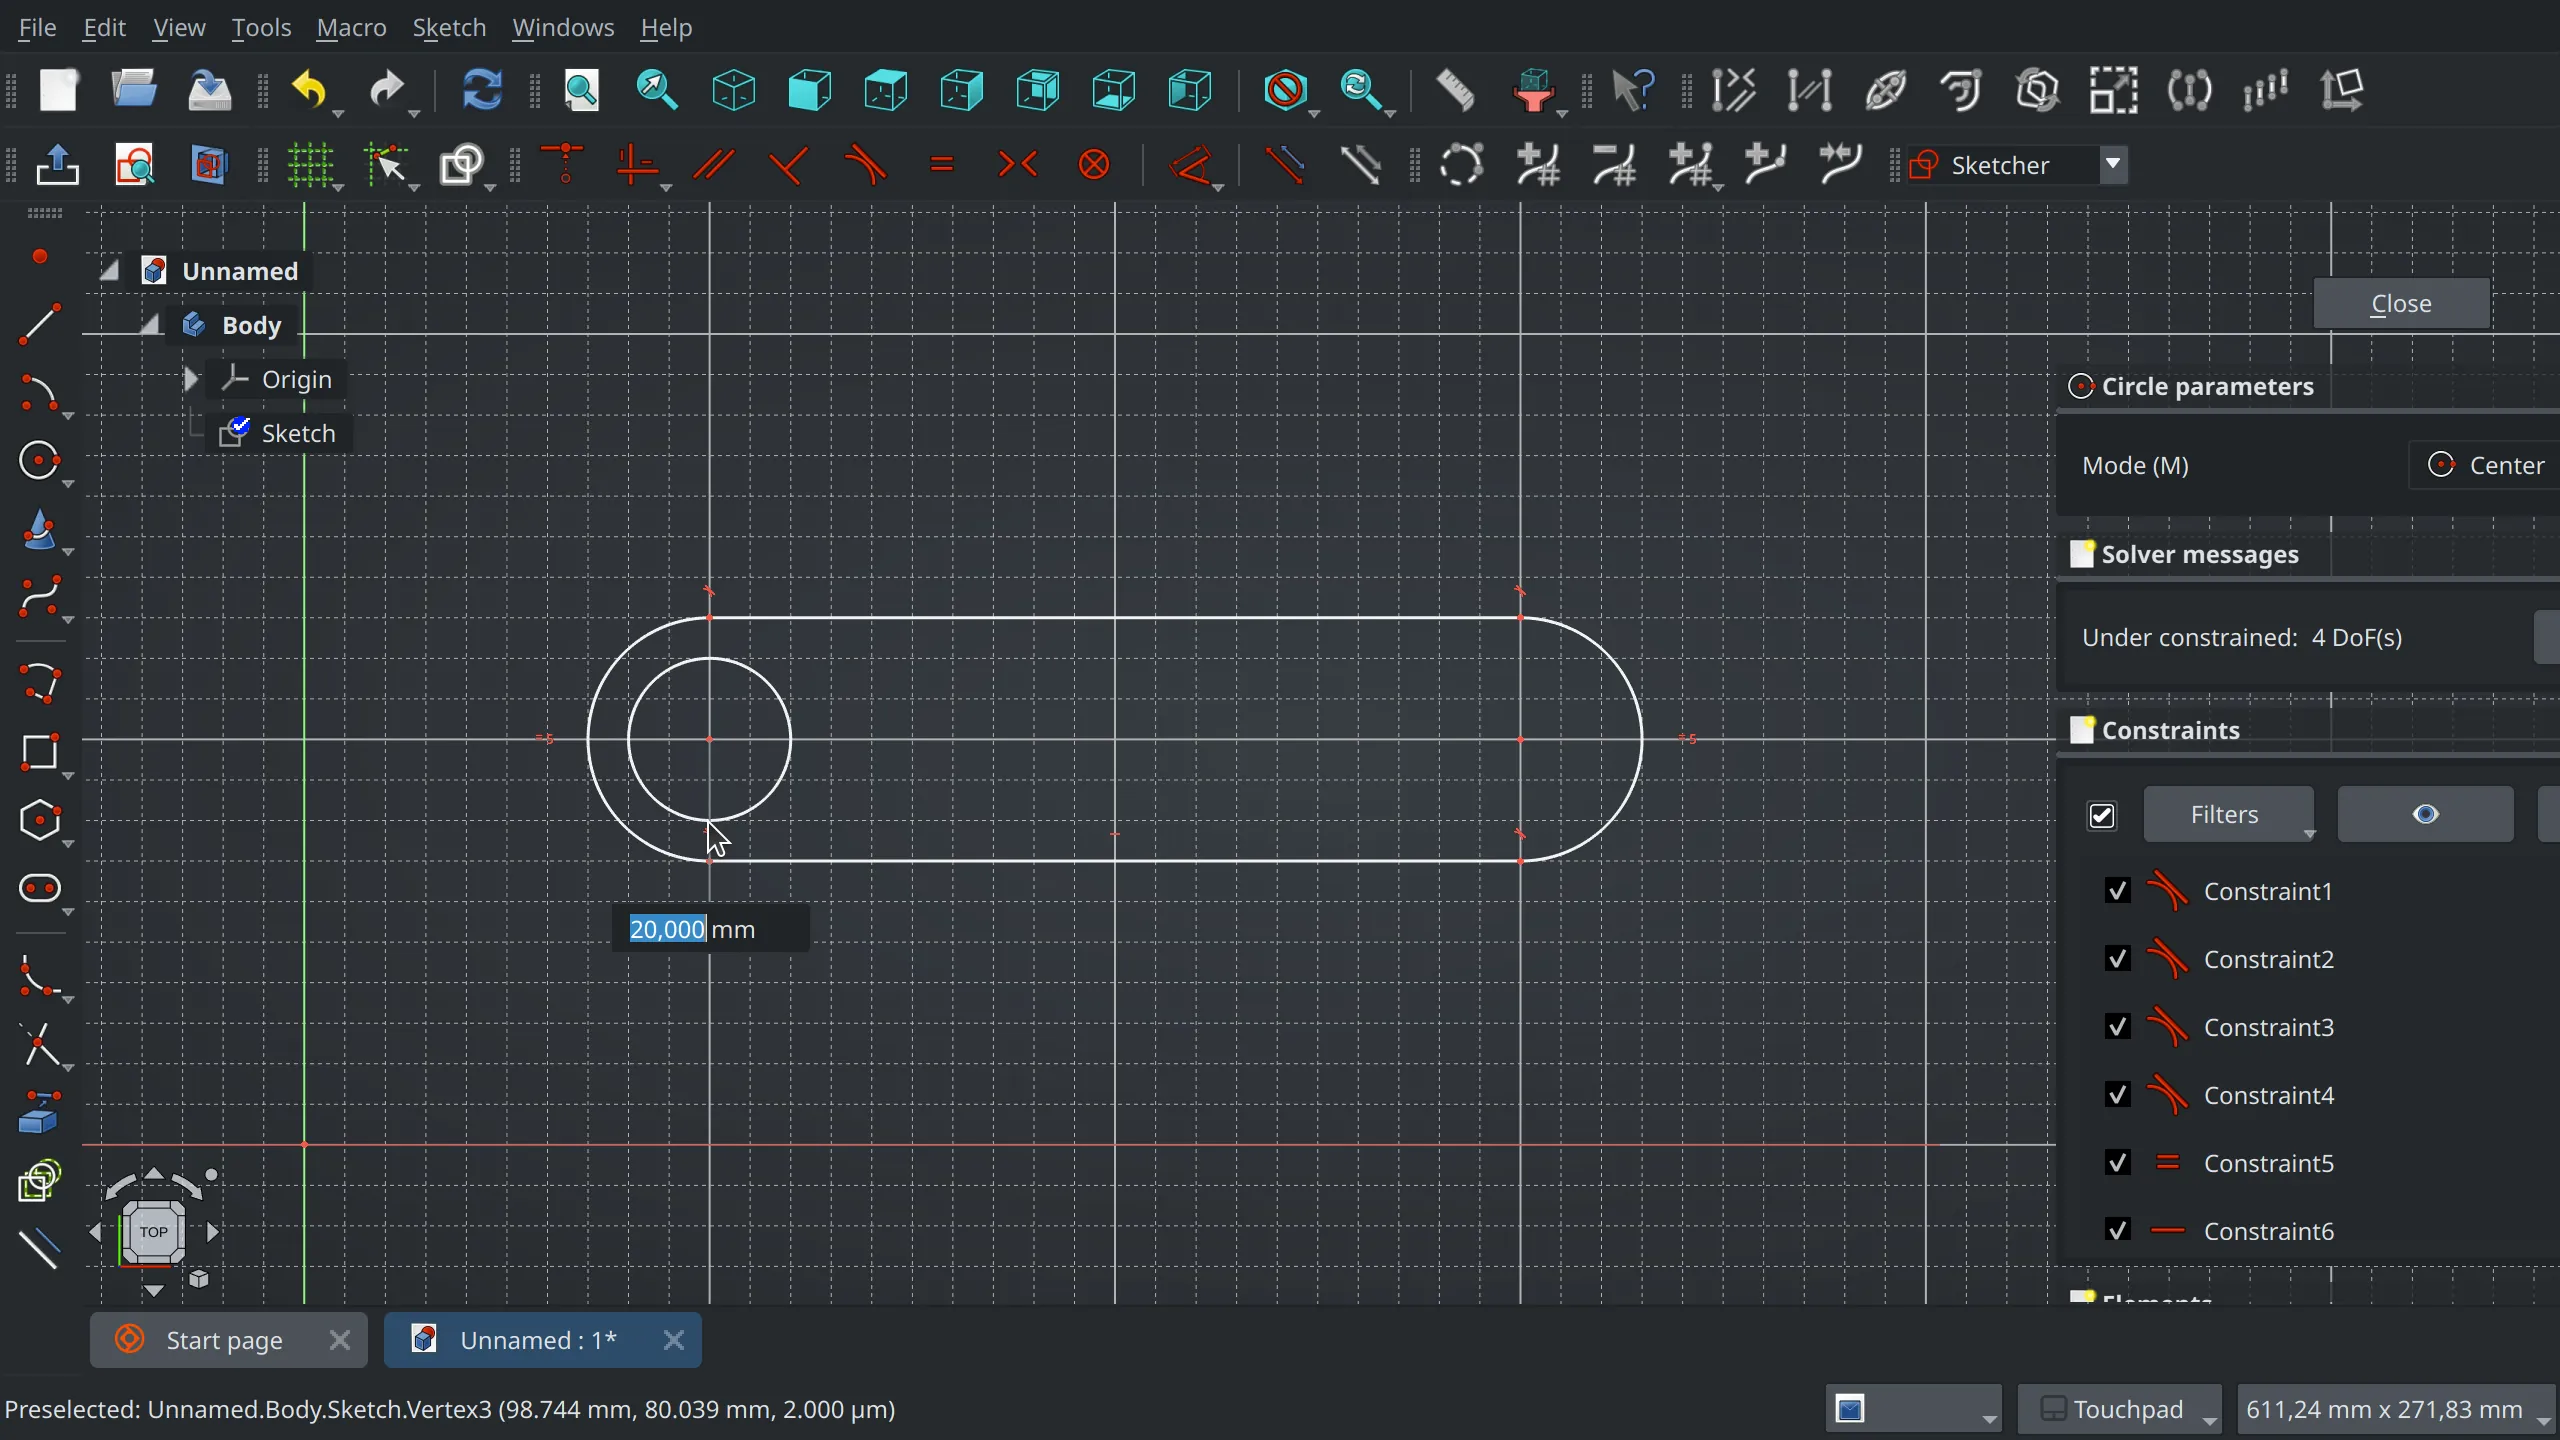 Floating input widgets in Sketcher